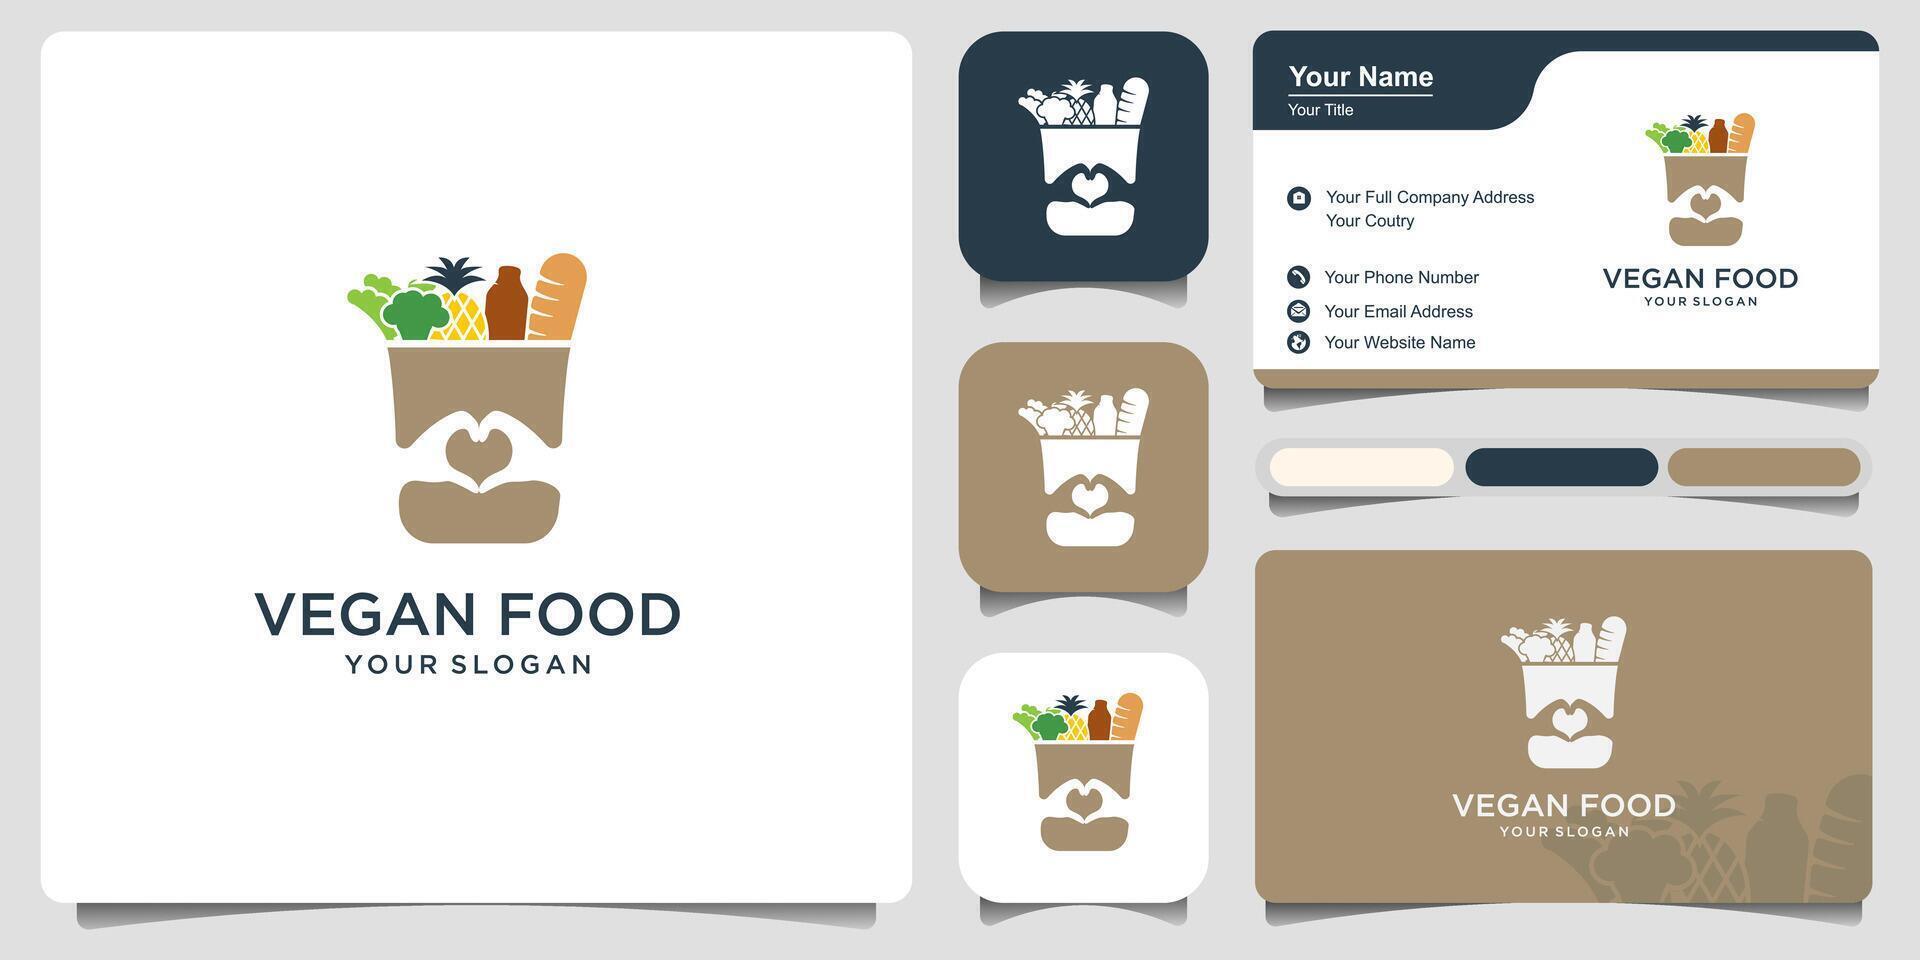 Lebensmittelgeschäft Papier Tasche mit Essen Logo Design und Geschäft Karte. wiederverwendbar Produkt Tasche mit gesund vegan vegan Essen Vektor Design.